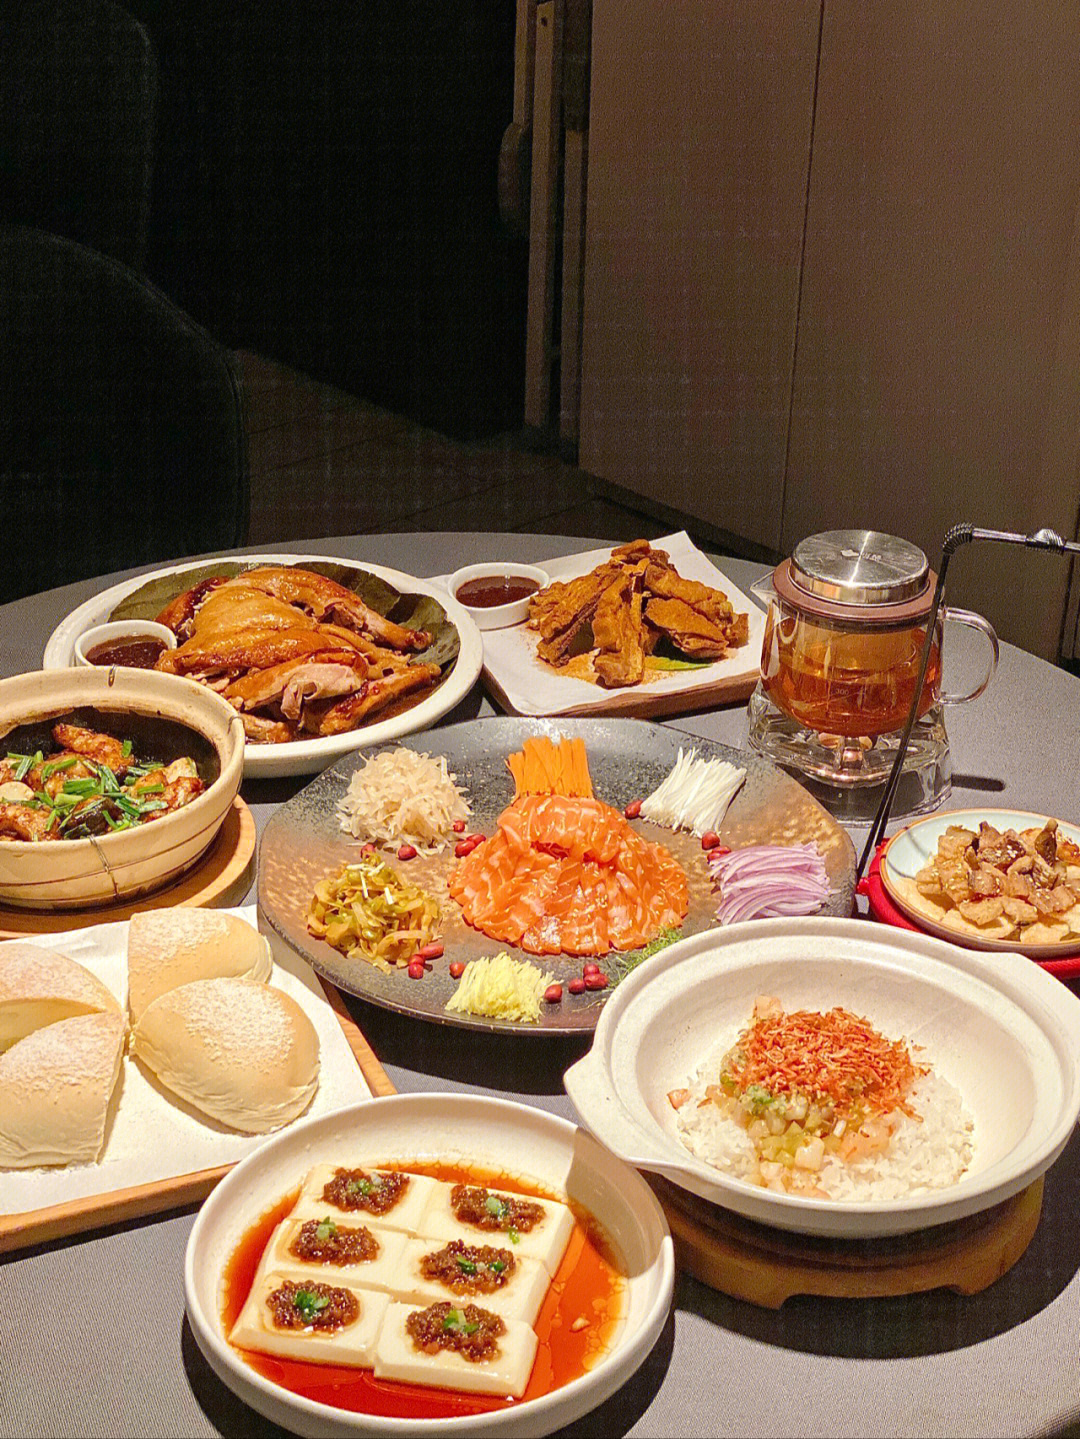 深圳美食排行榜图片